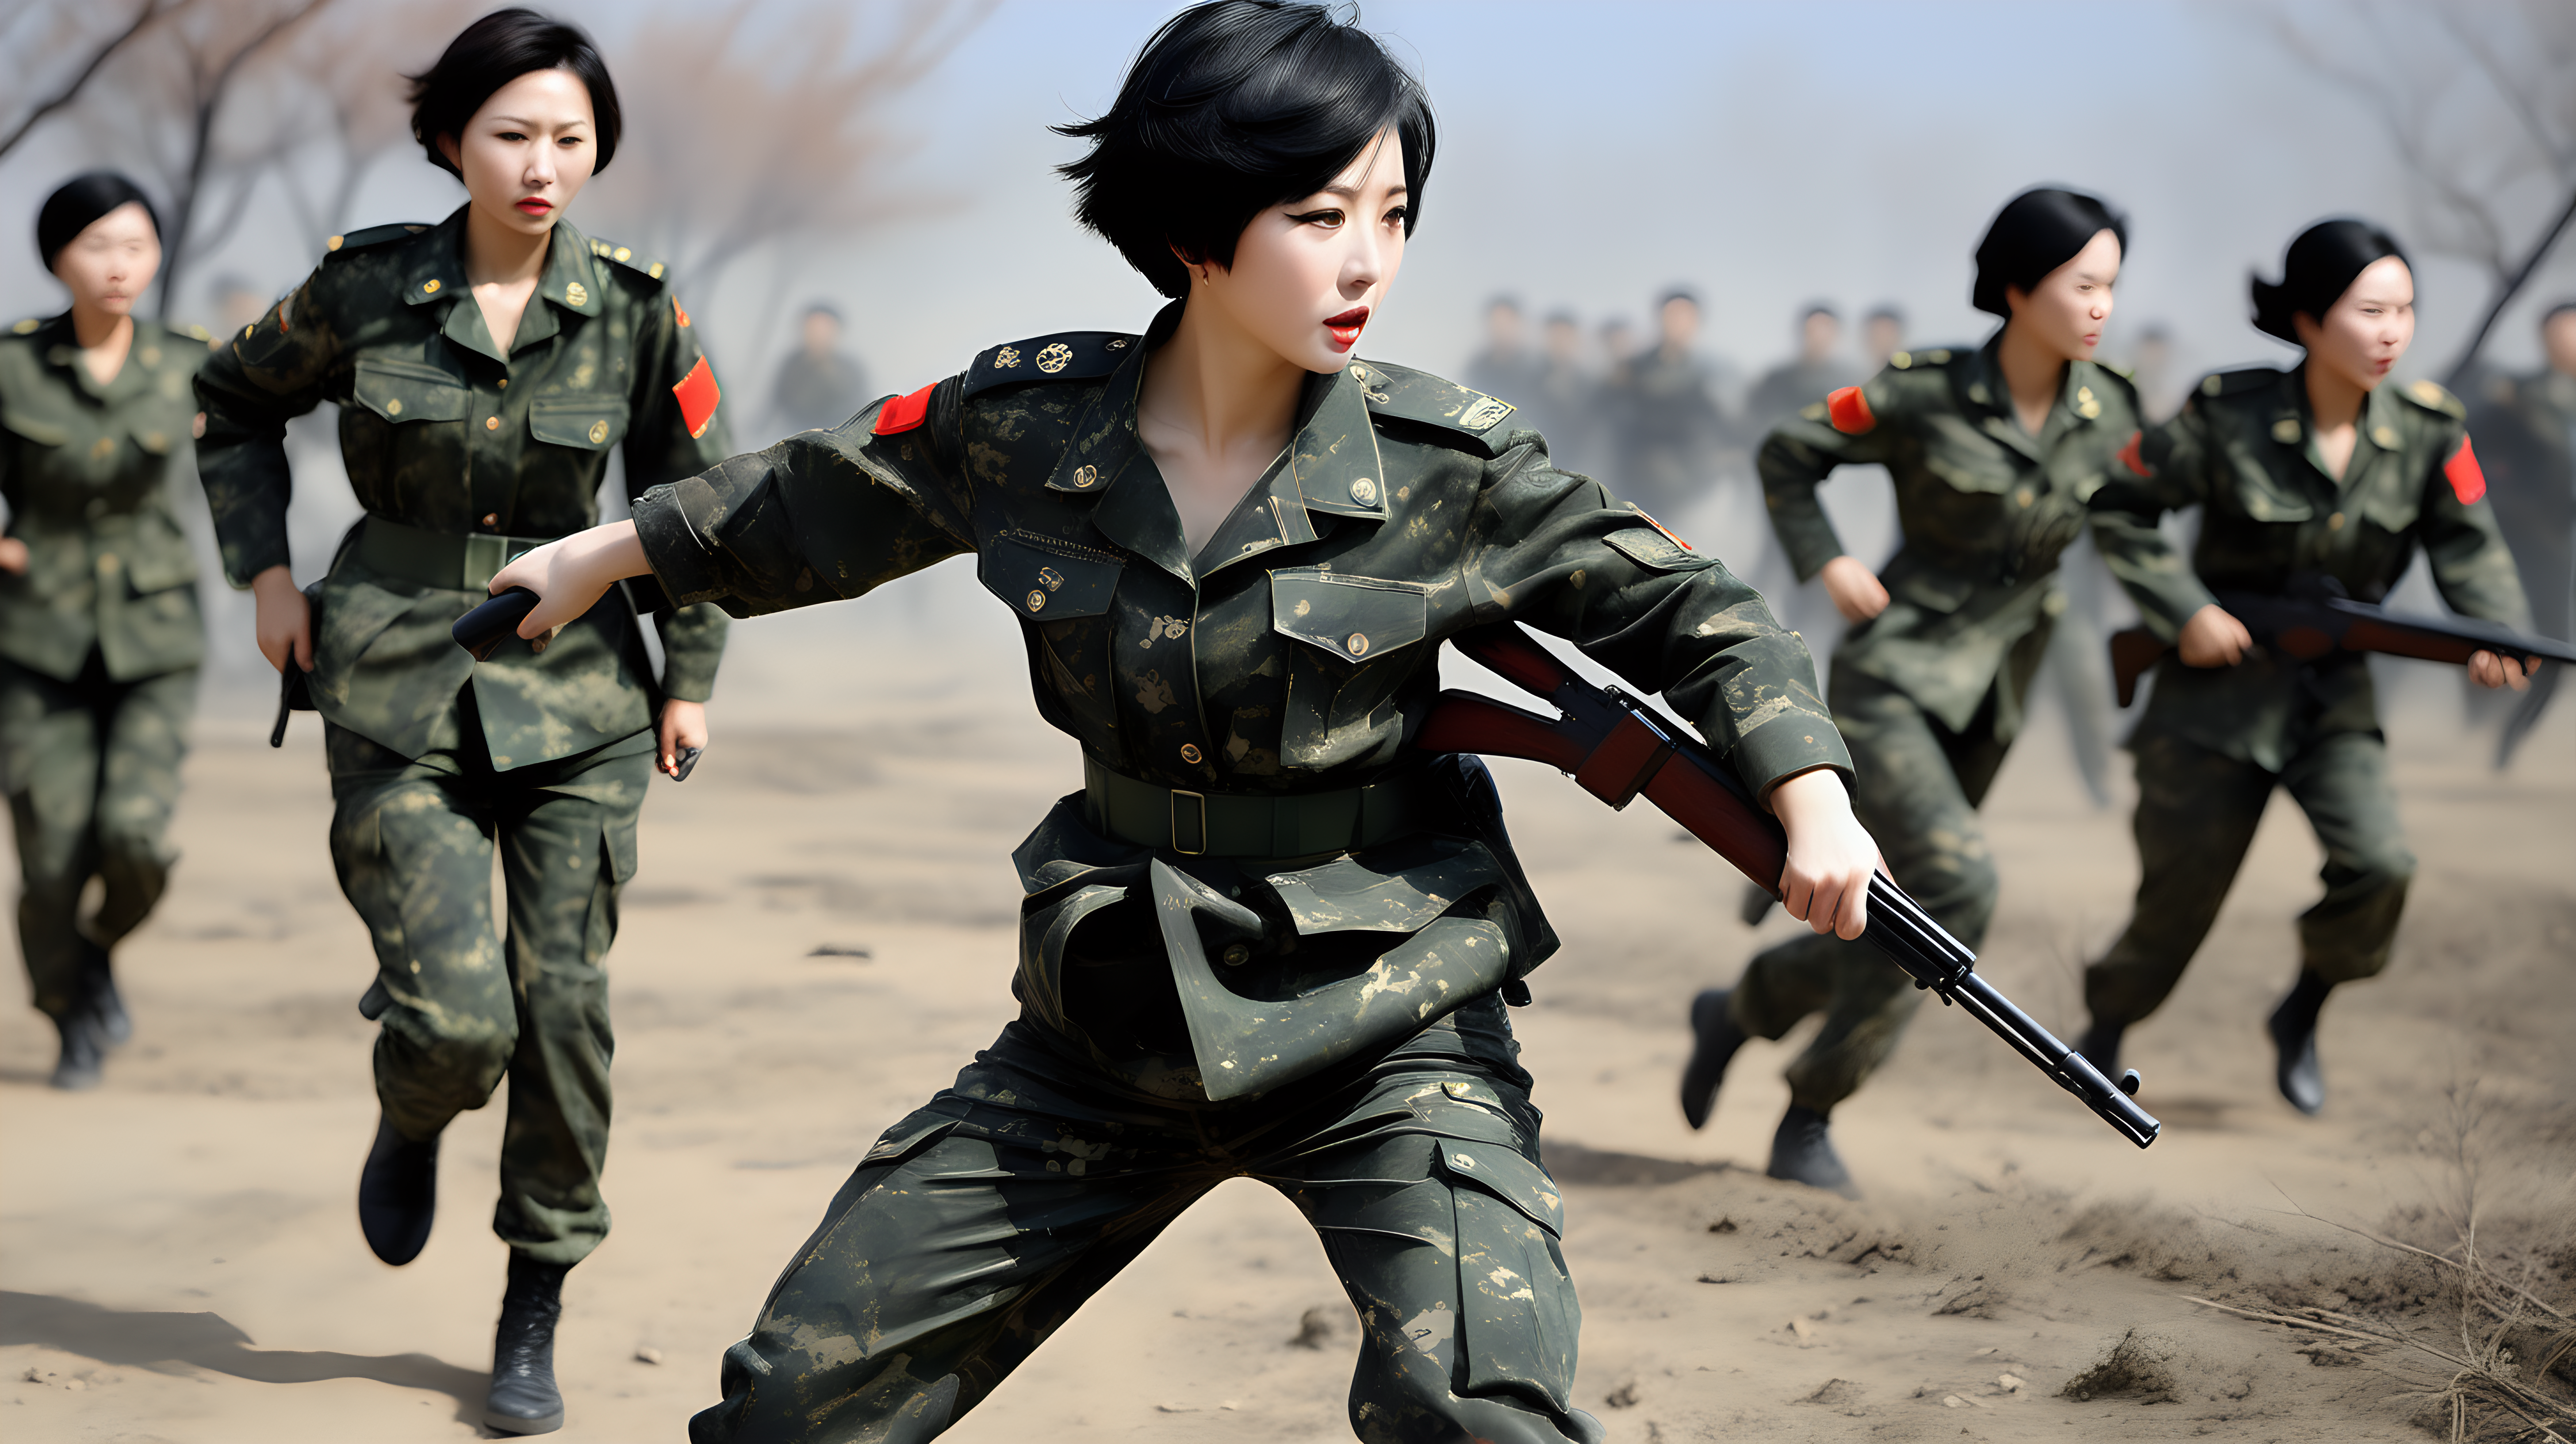 中国女兵
短发
黑发
迷彩紧身裤
在战场上拖行受伤的战友
炮火纷飞